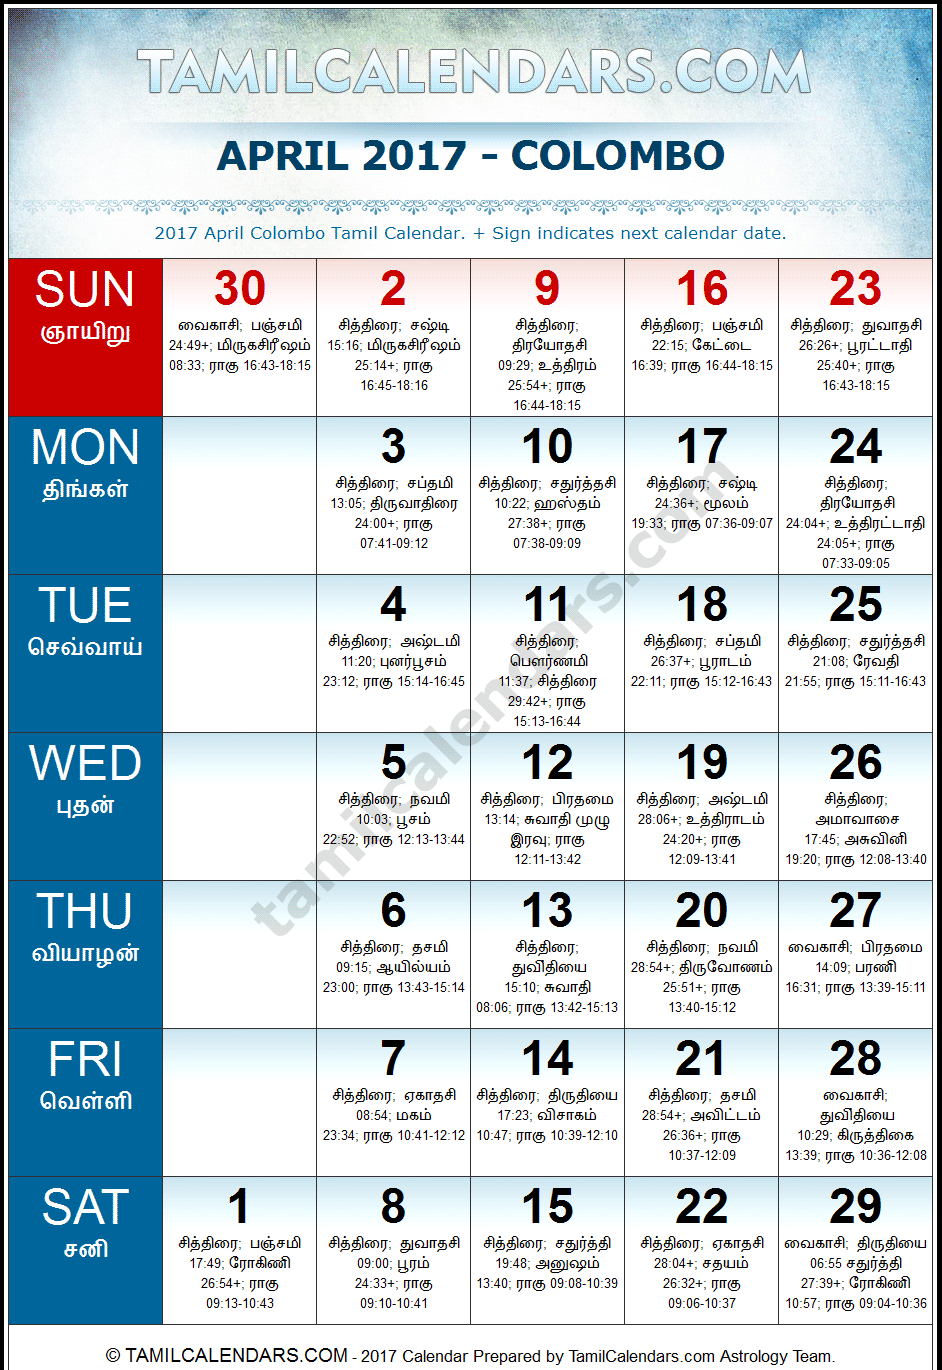 April 2017 Tamil Calendar for Sri Lanka (Colombo)